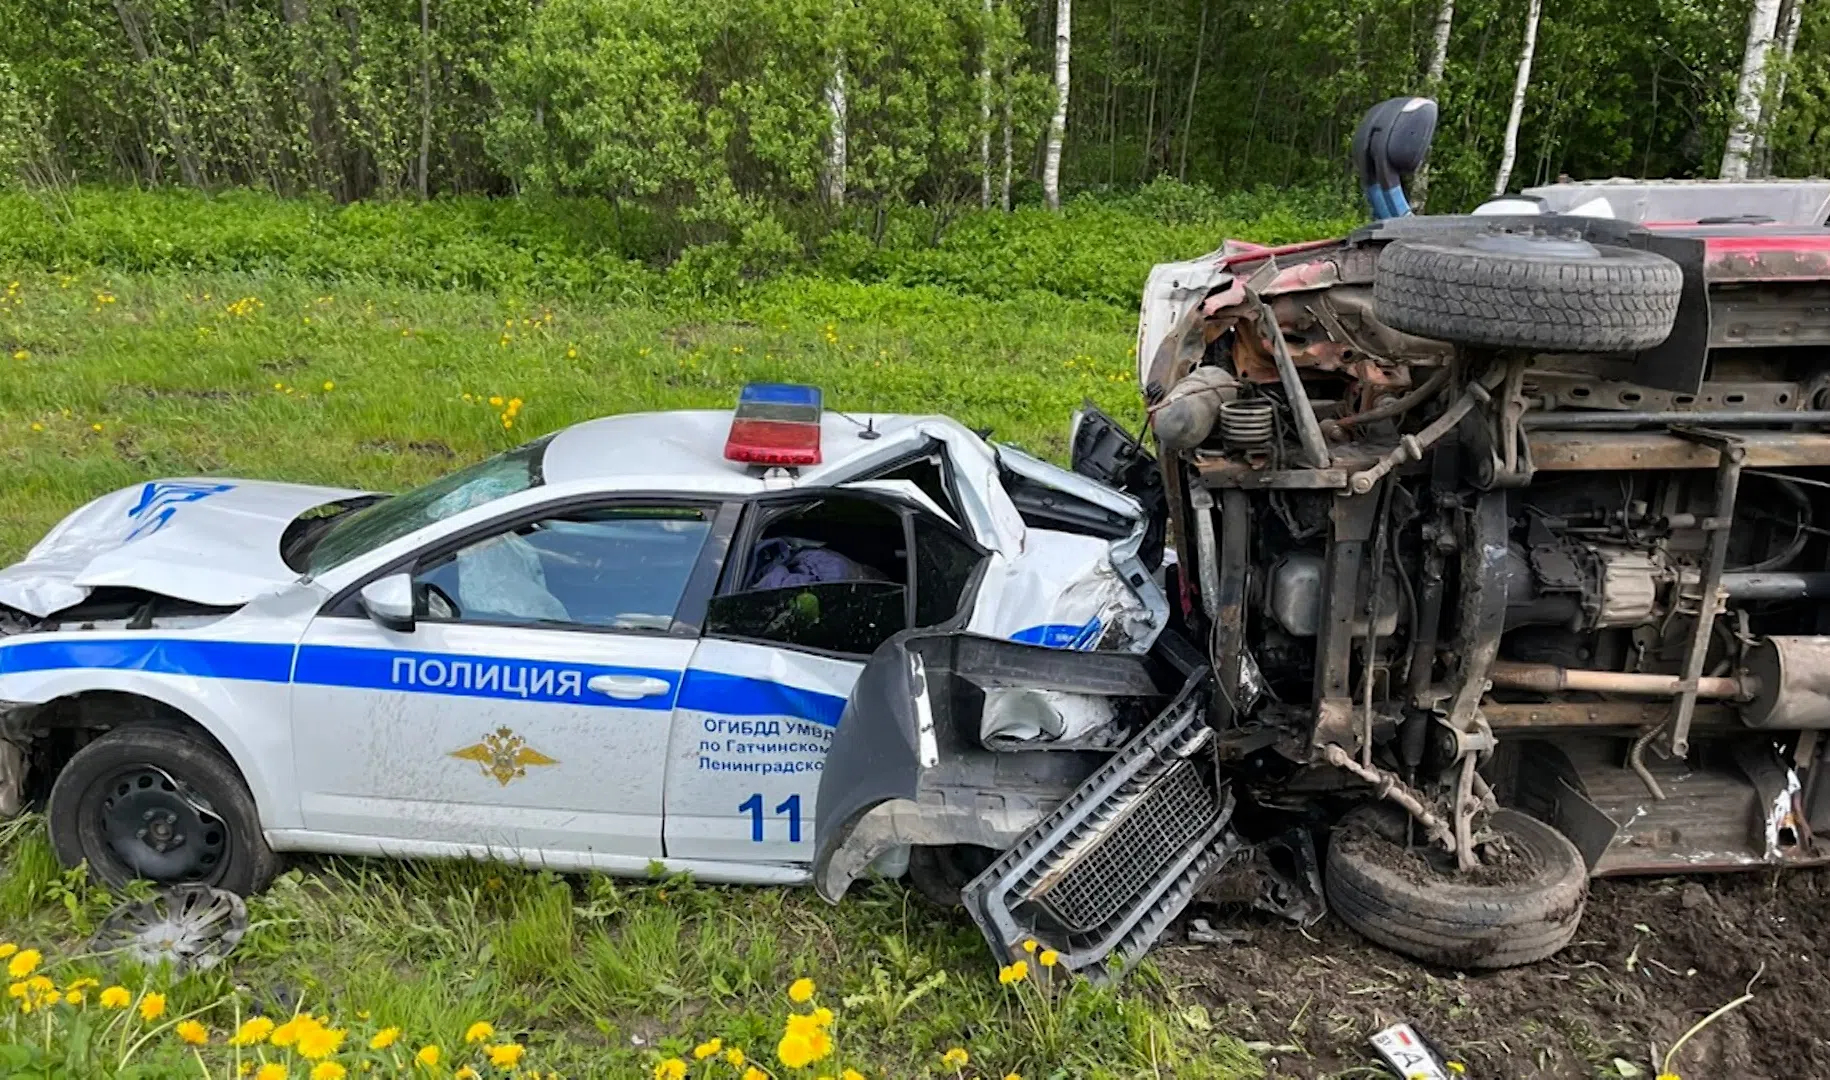 Полицейская машина врезалась. Машина ДПС перевернулась. Авария в Ленинградской области.